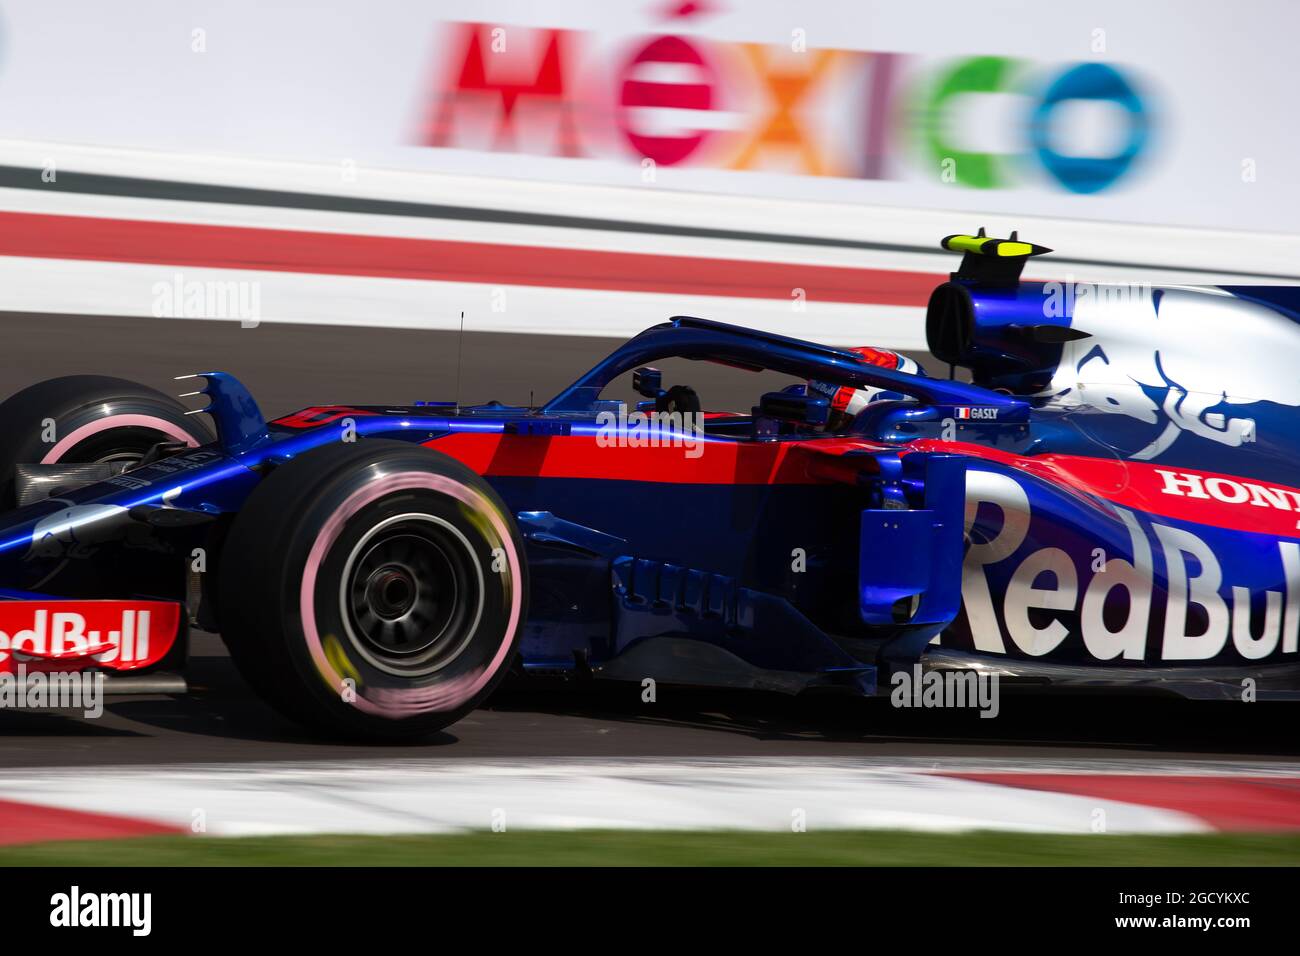 Temple of VTEC Motorsports  Blog - F1 - 2018 Mexican Grand Prix